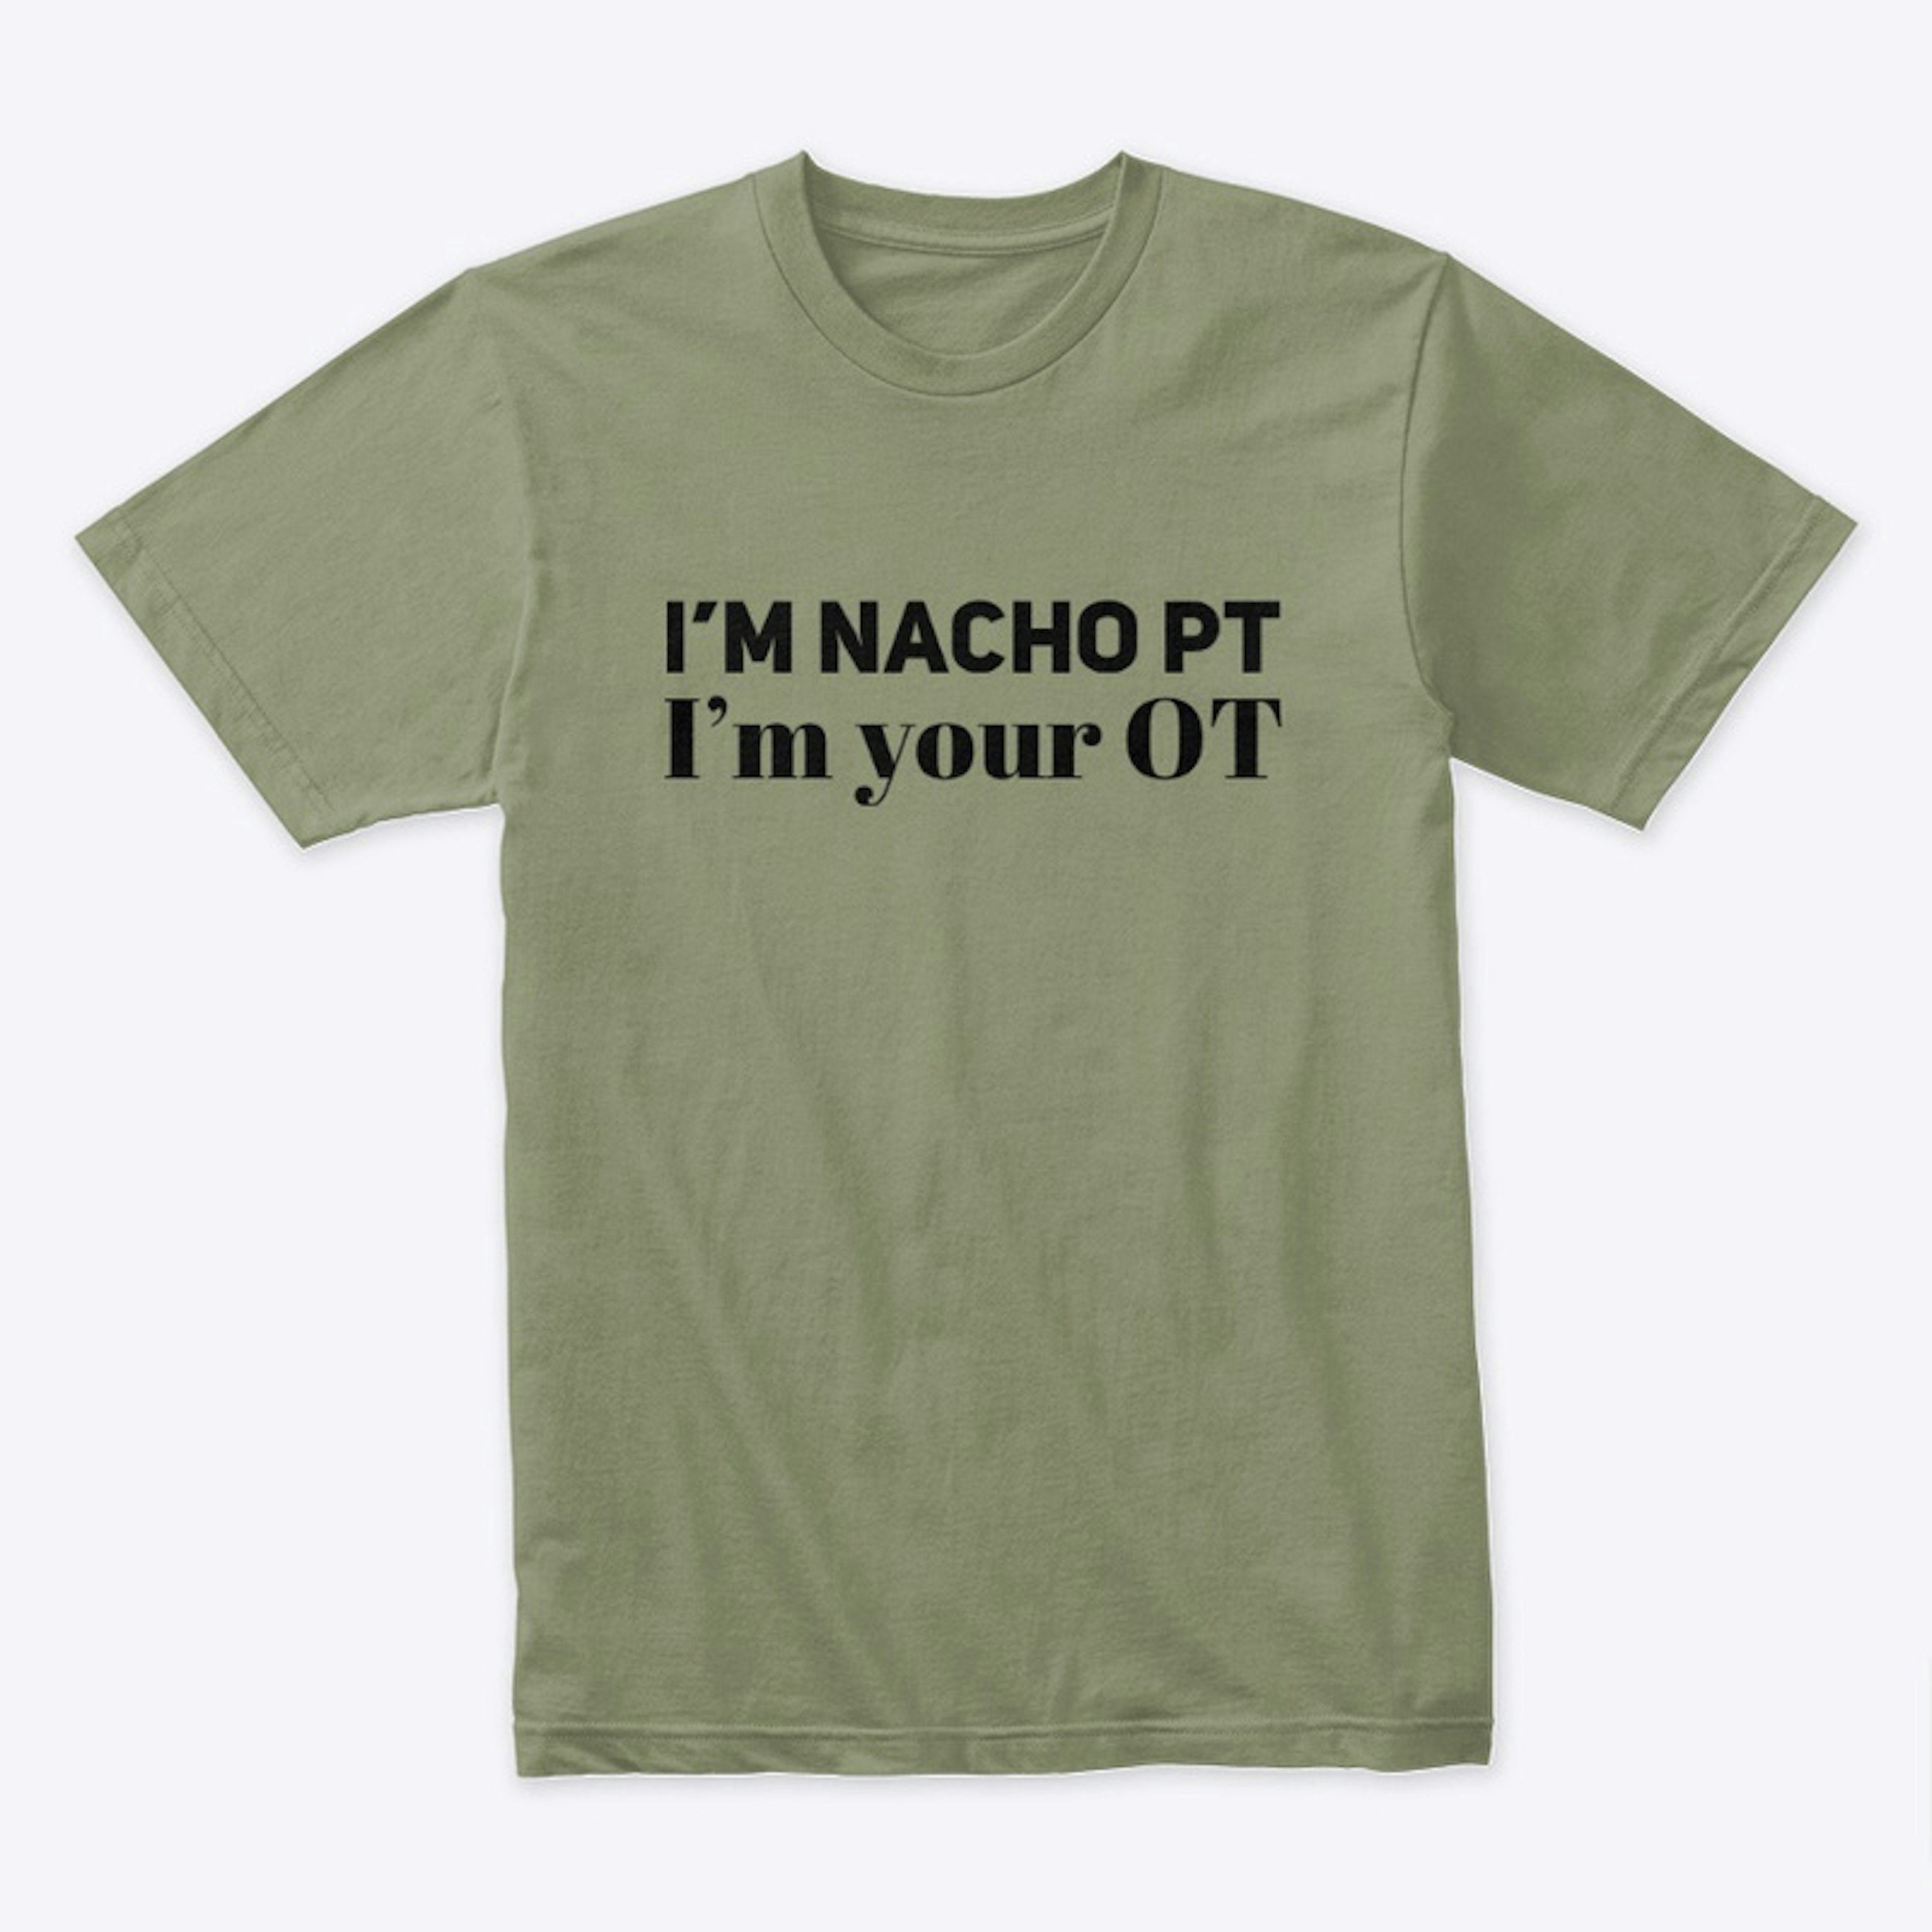 I'm NACHO PT, I'm your OT